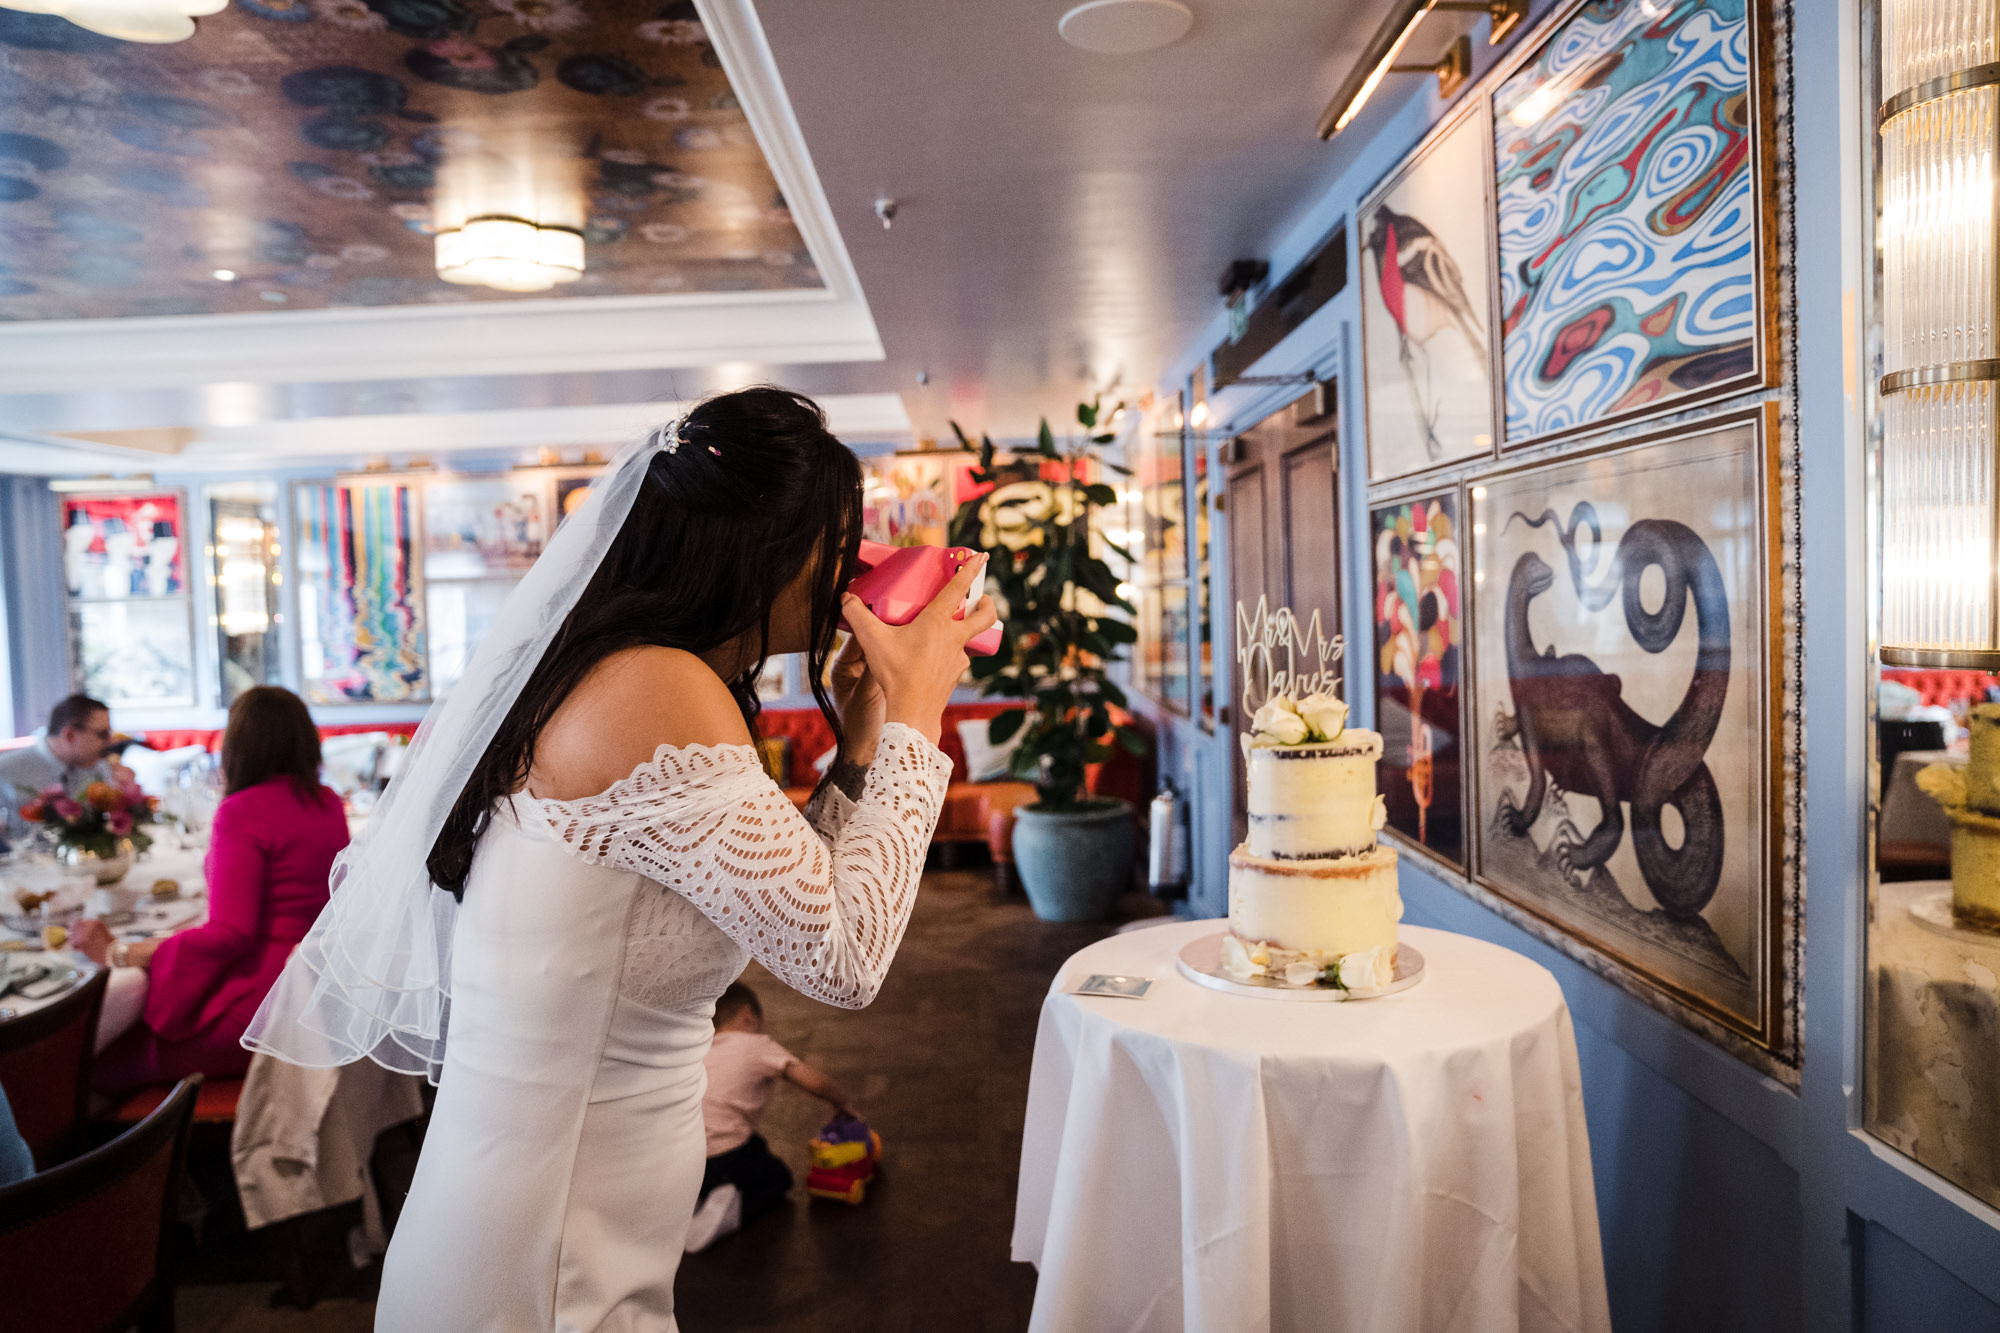 bride takes a Polaroid photo of the wedding cake